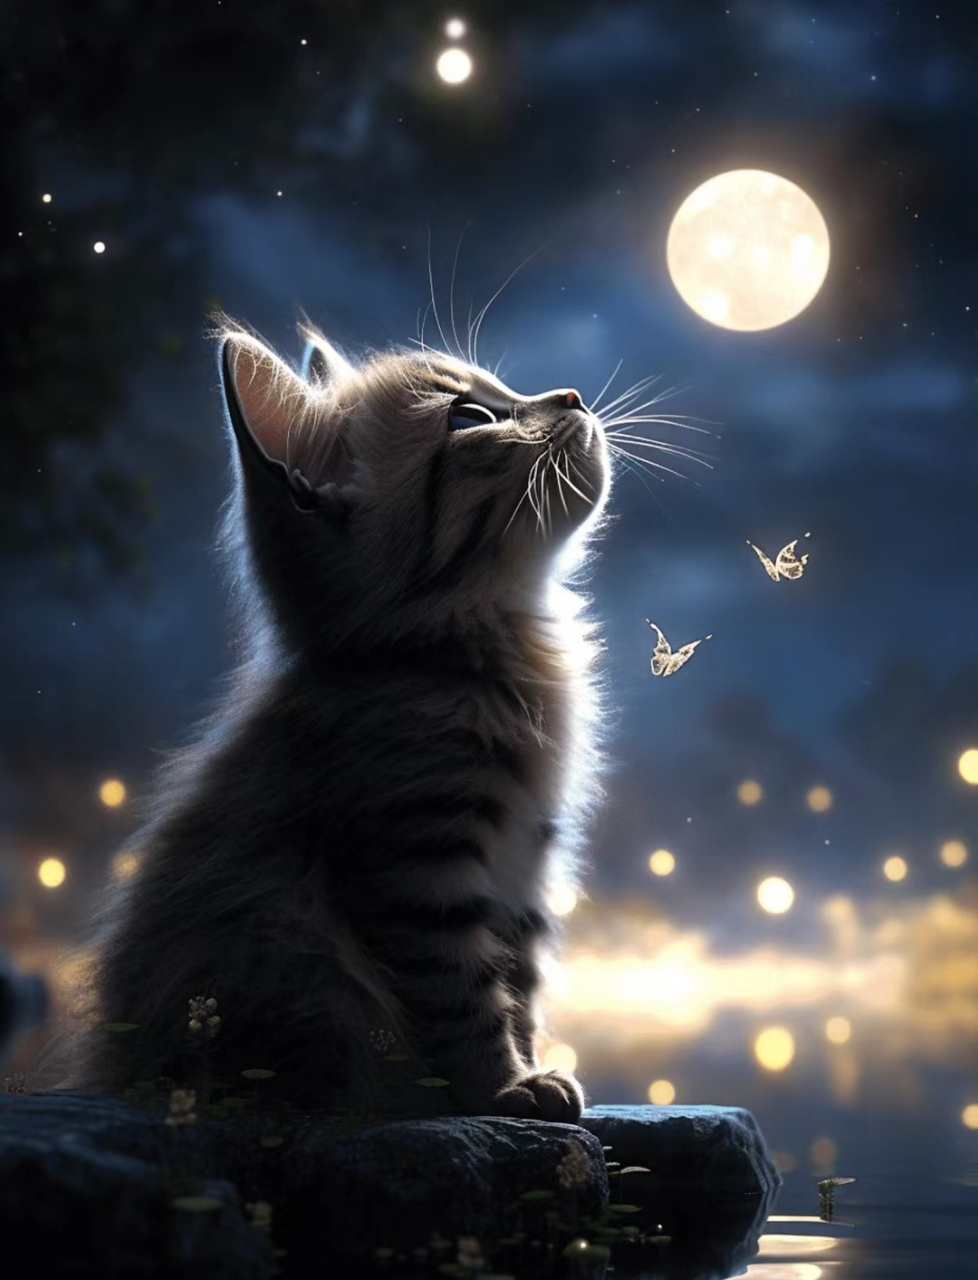 当我看到这只小猫蹲在石头上,仰望着天空中飞舞的蝴蝶和明亮的月亮时